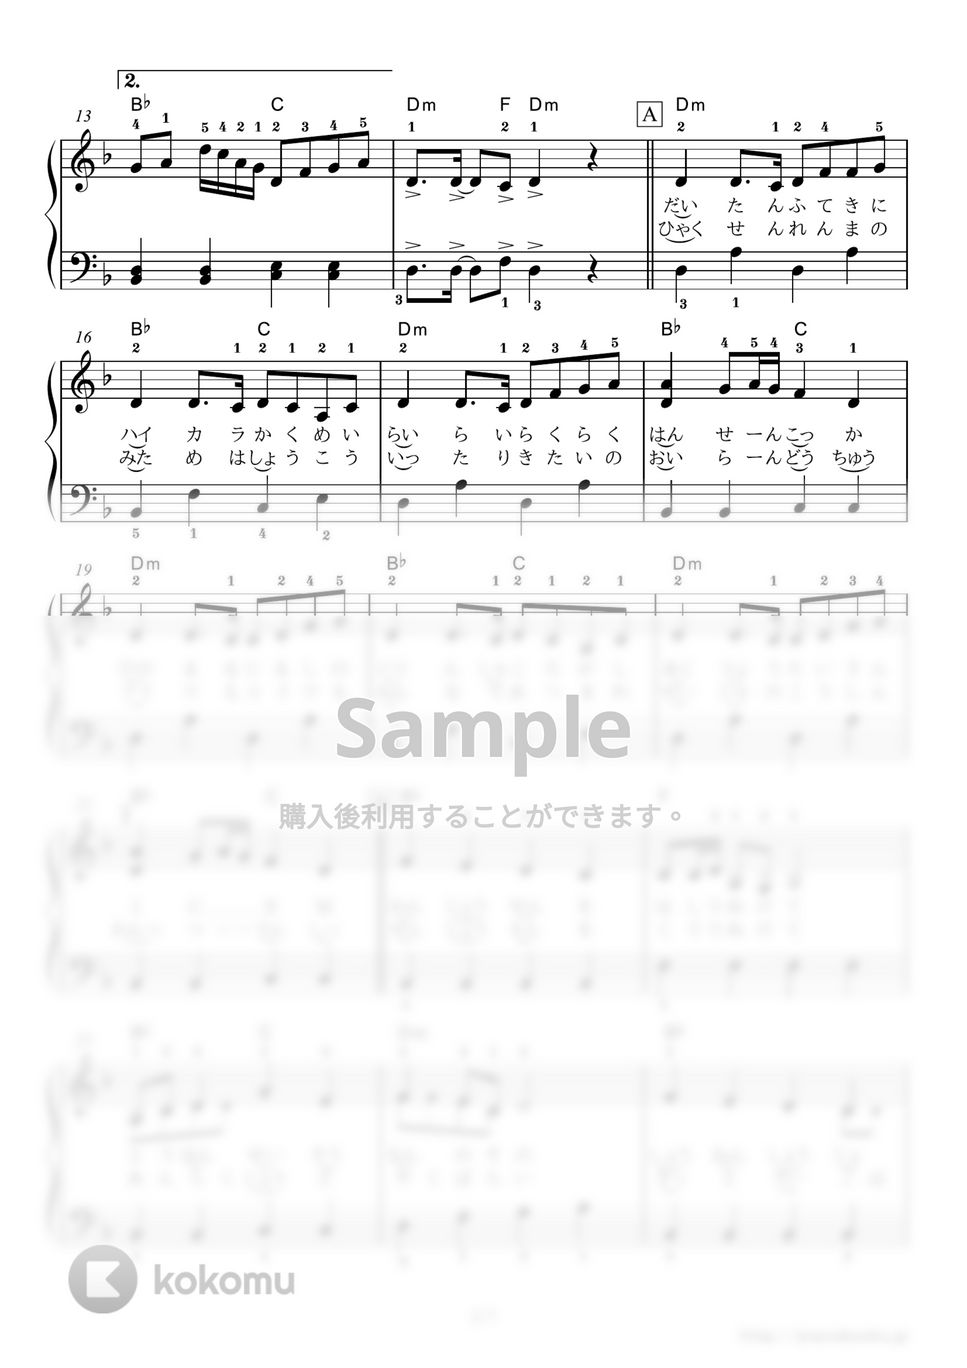 黒うさP - 千本桜 (TOYOTAハイブリッドカー「AQUA」CMソング) by ピアノの本棚